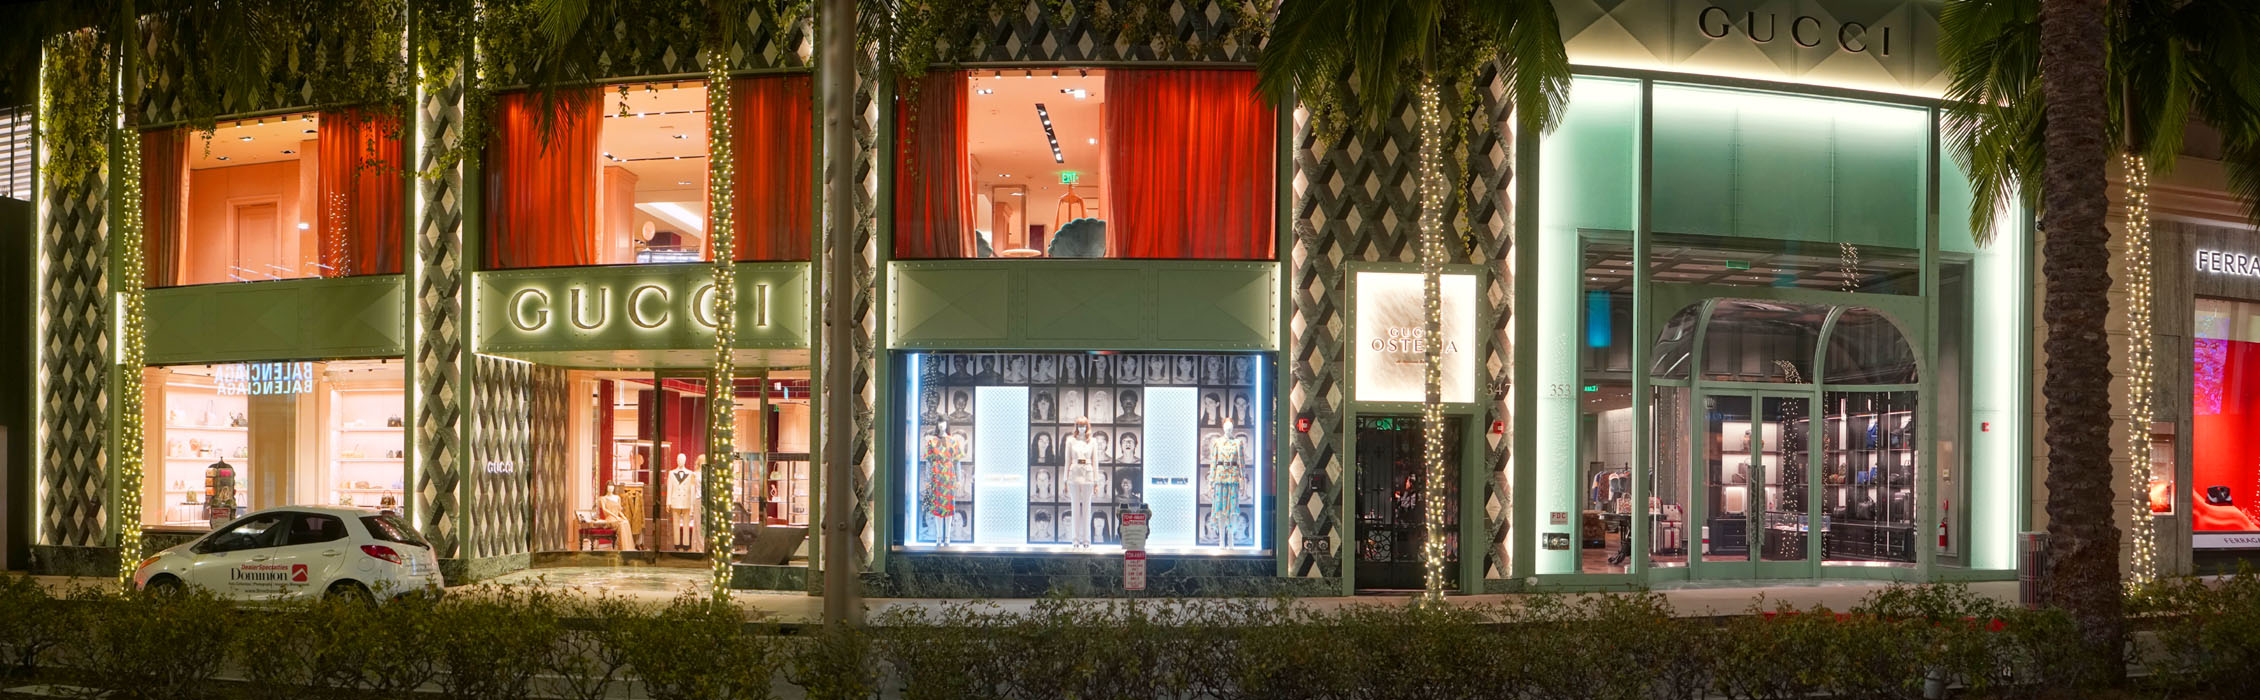 Gucci Osteria da Massimo Bottura Exterior